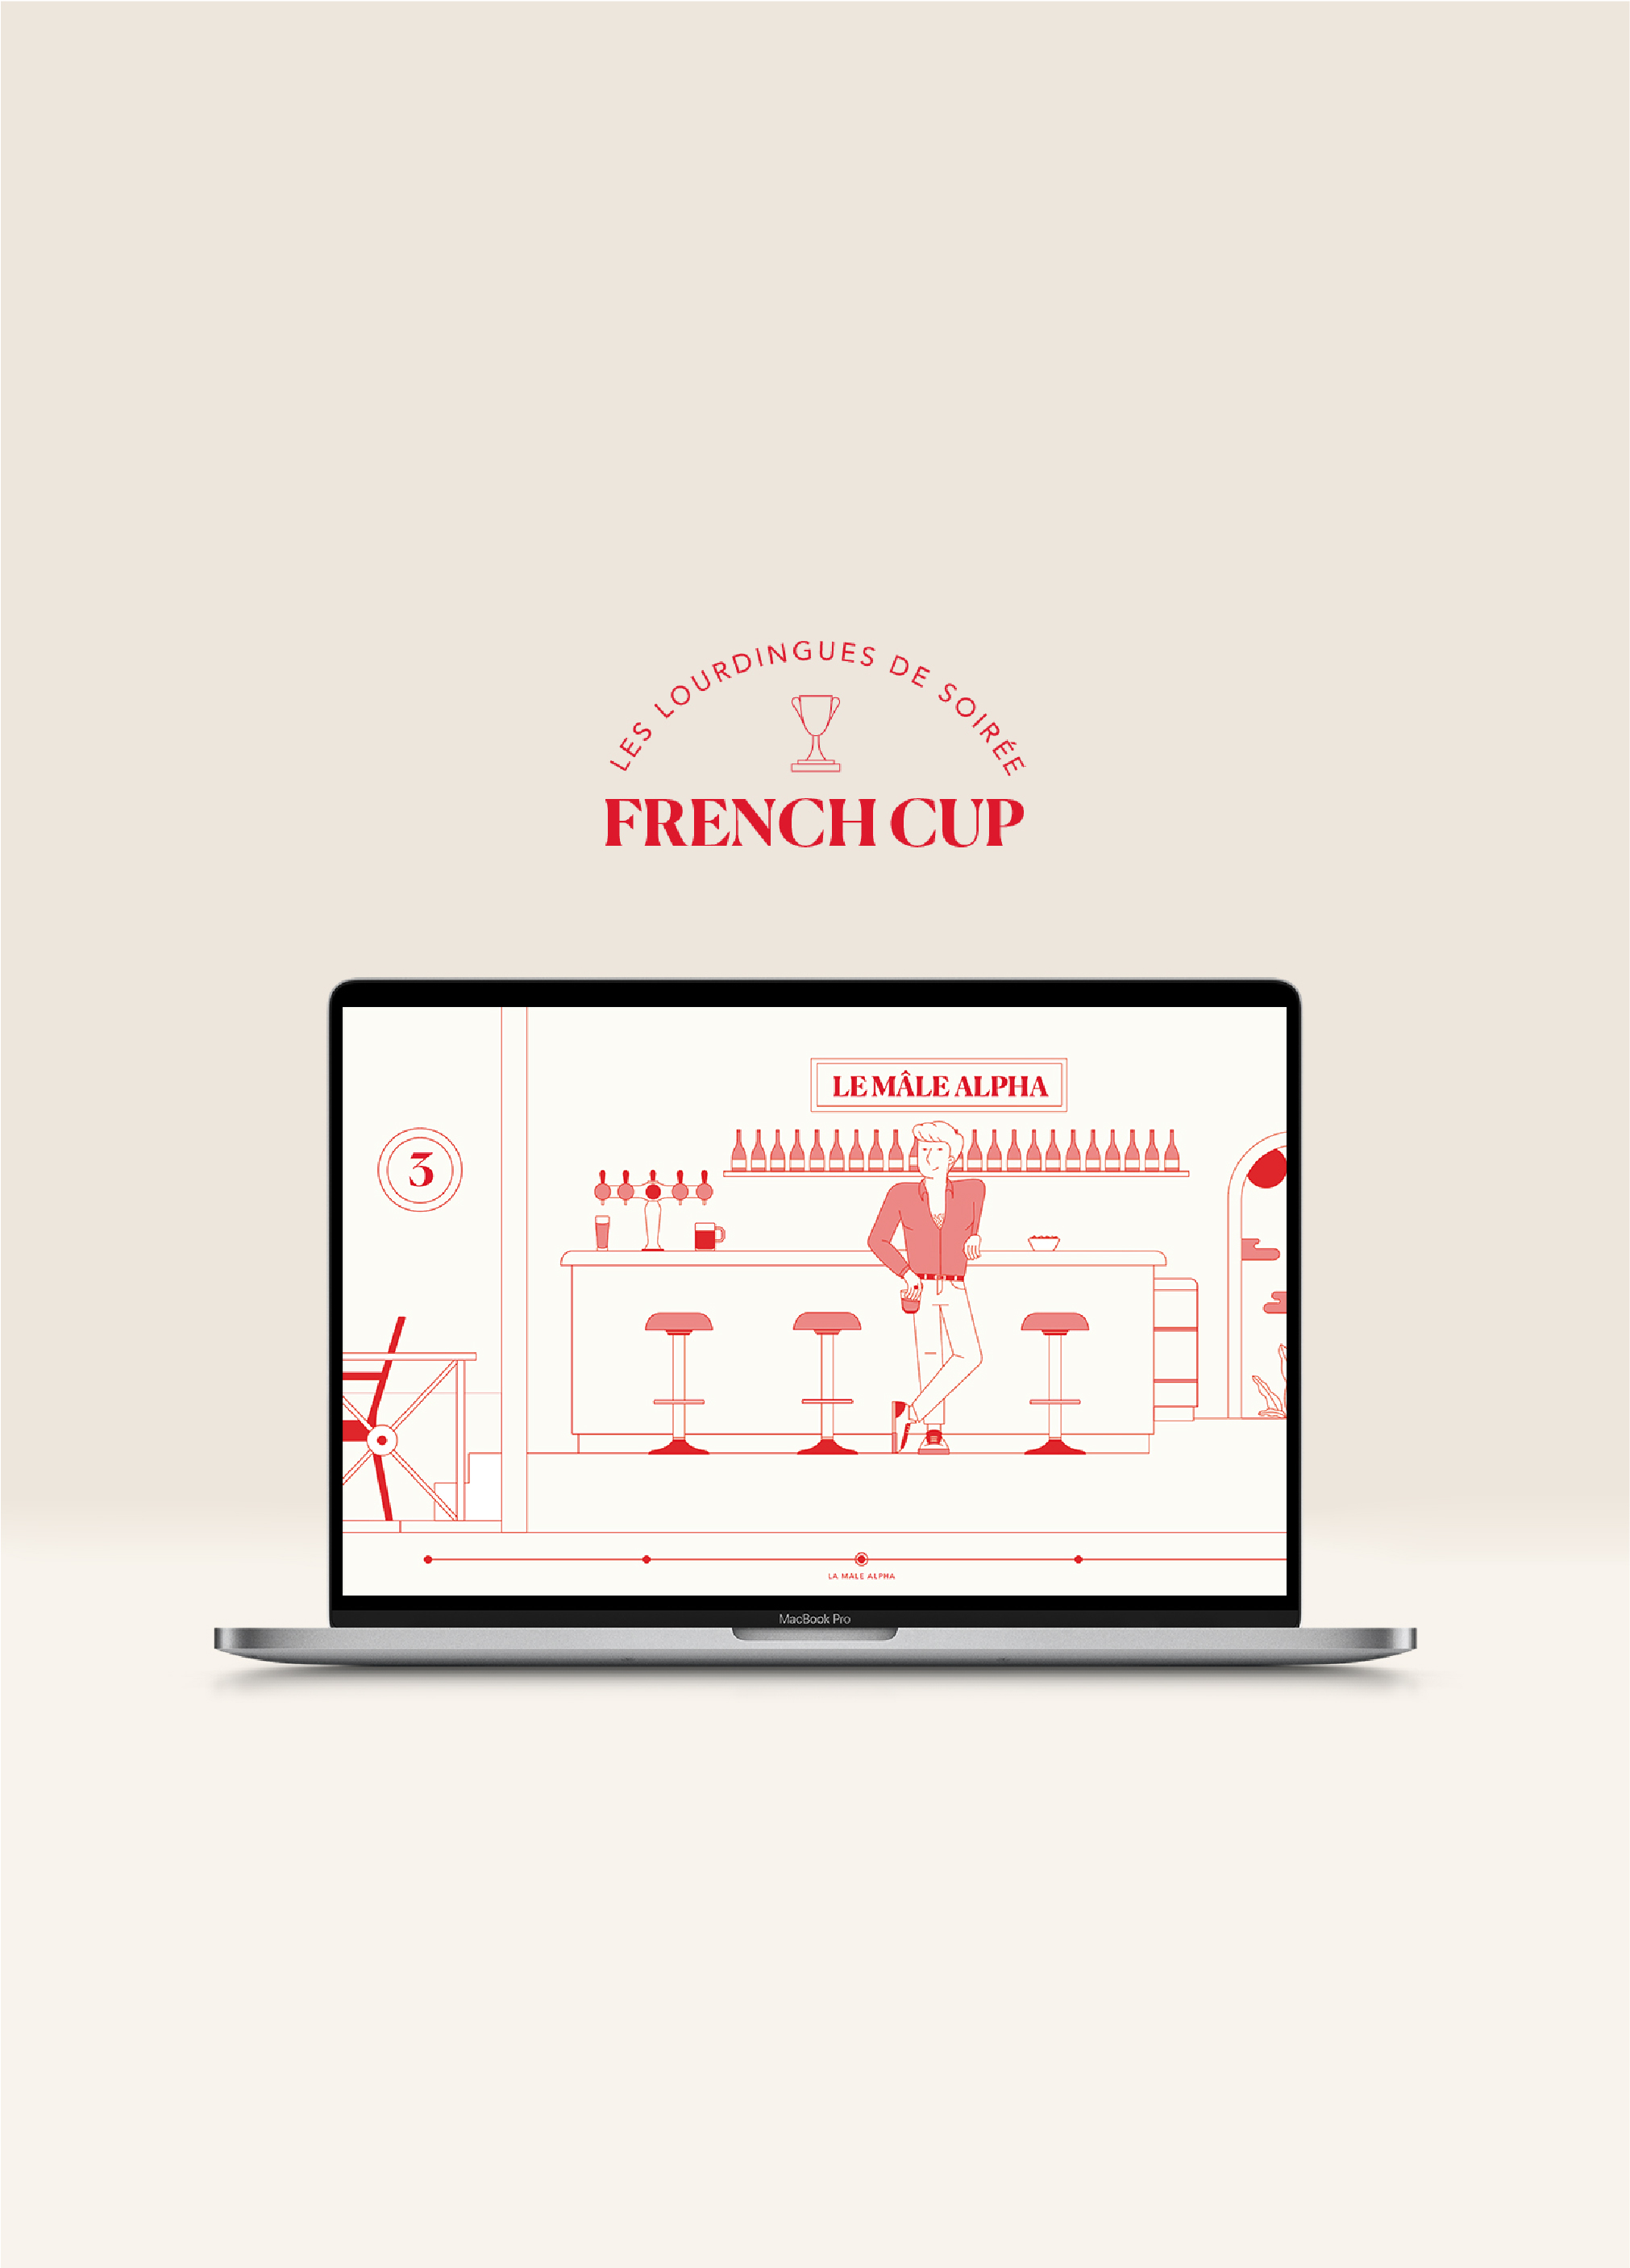 Visuel de couverture projet FrenchCup